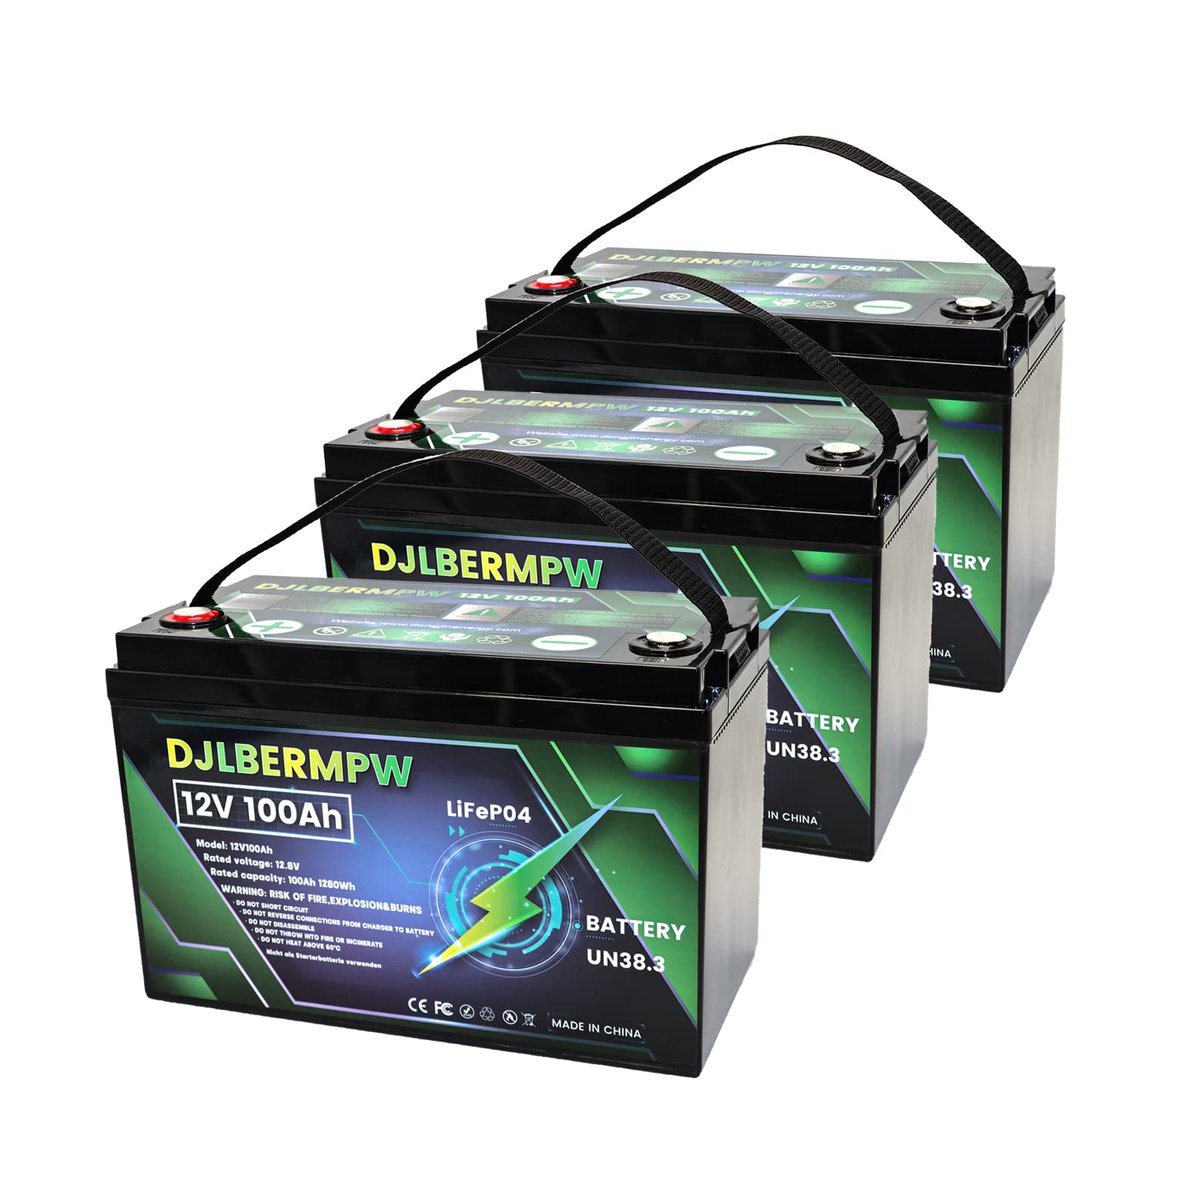 DJLBERMPW LiFePO4 Battery, Best Golf Cart Batteries